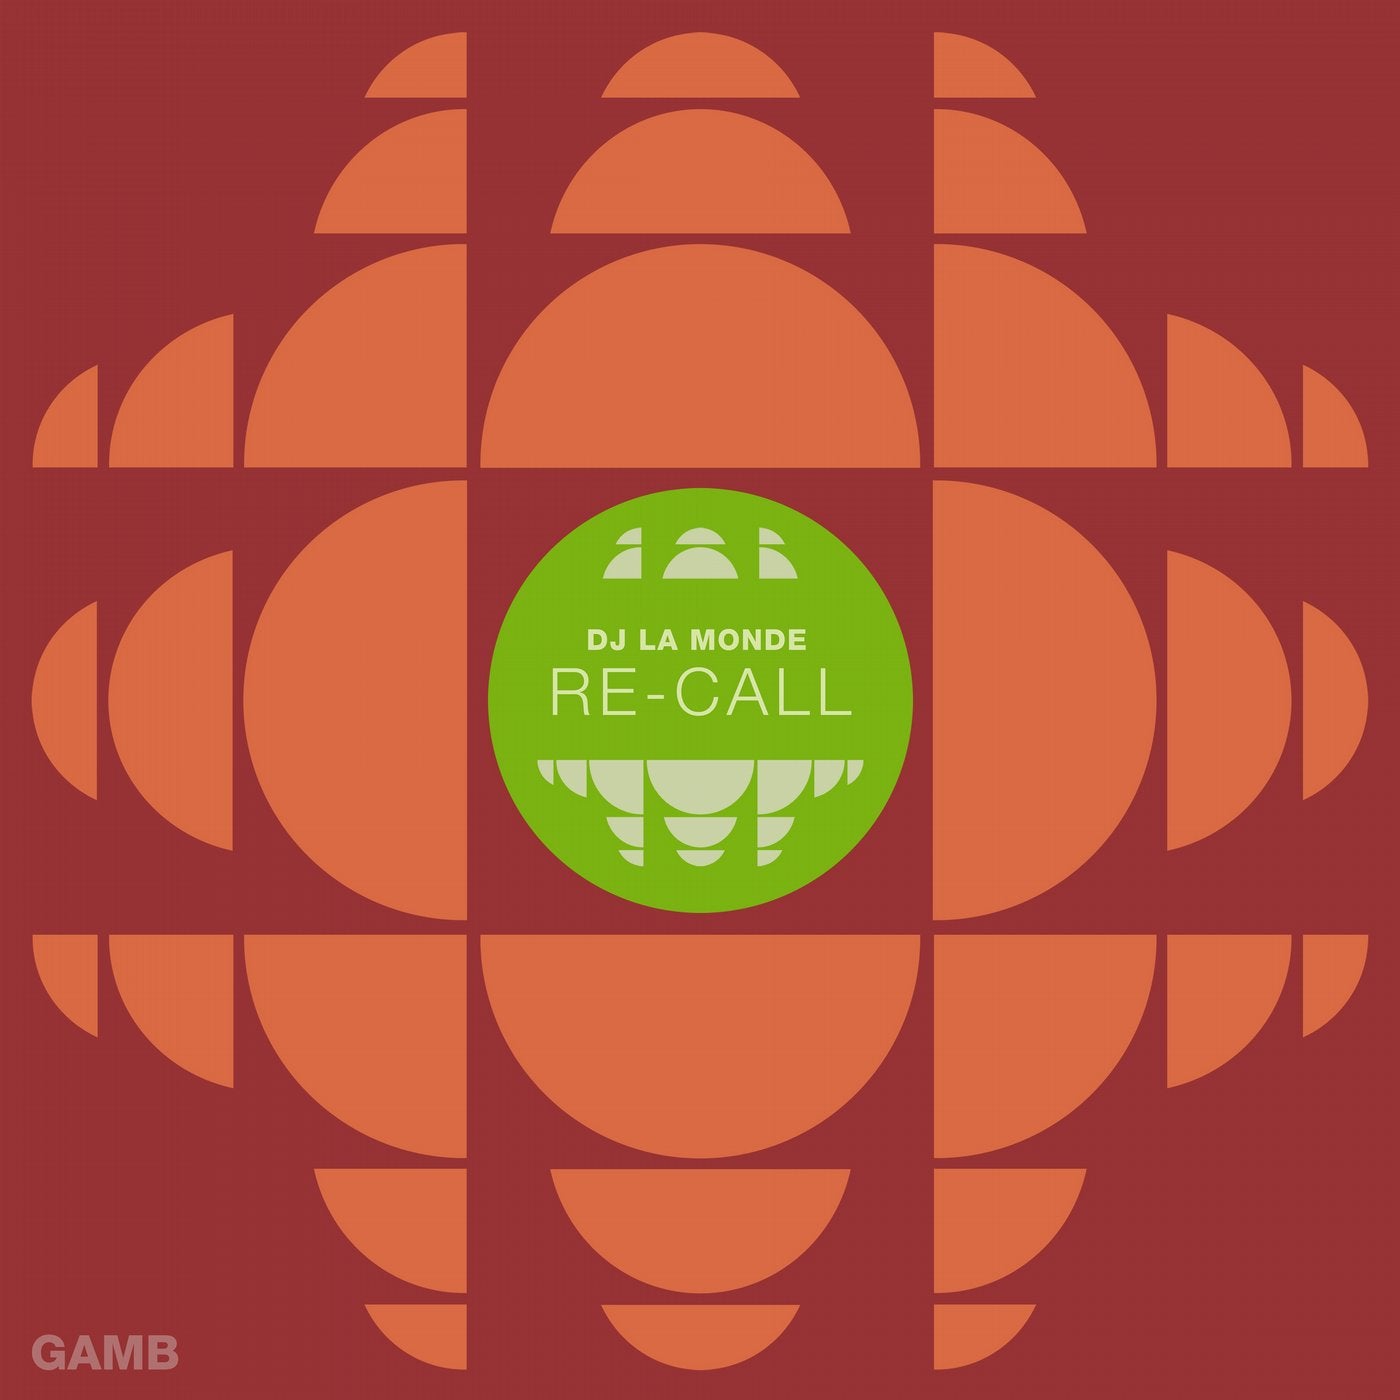 Re-Call